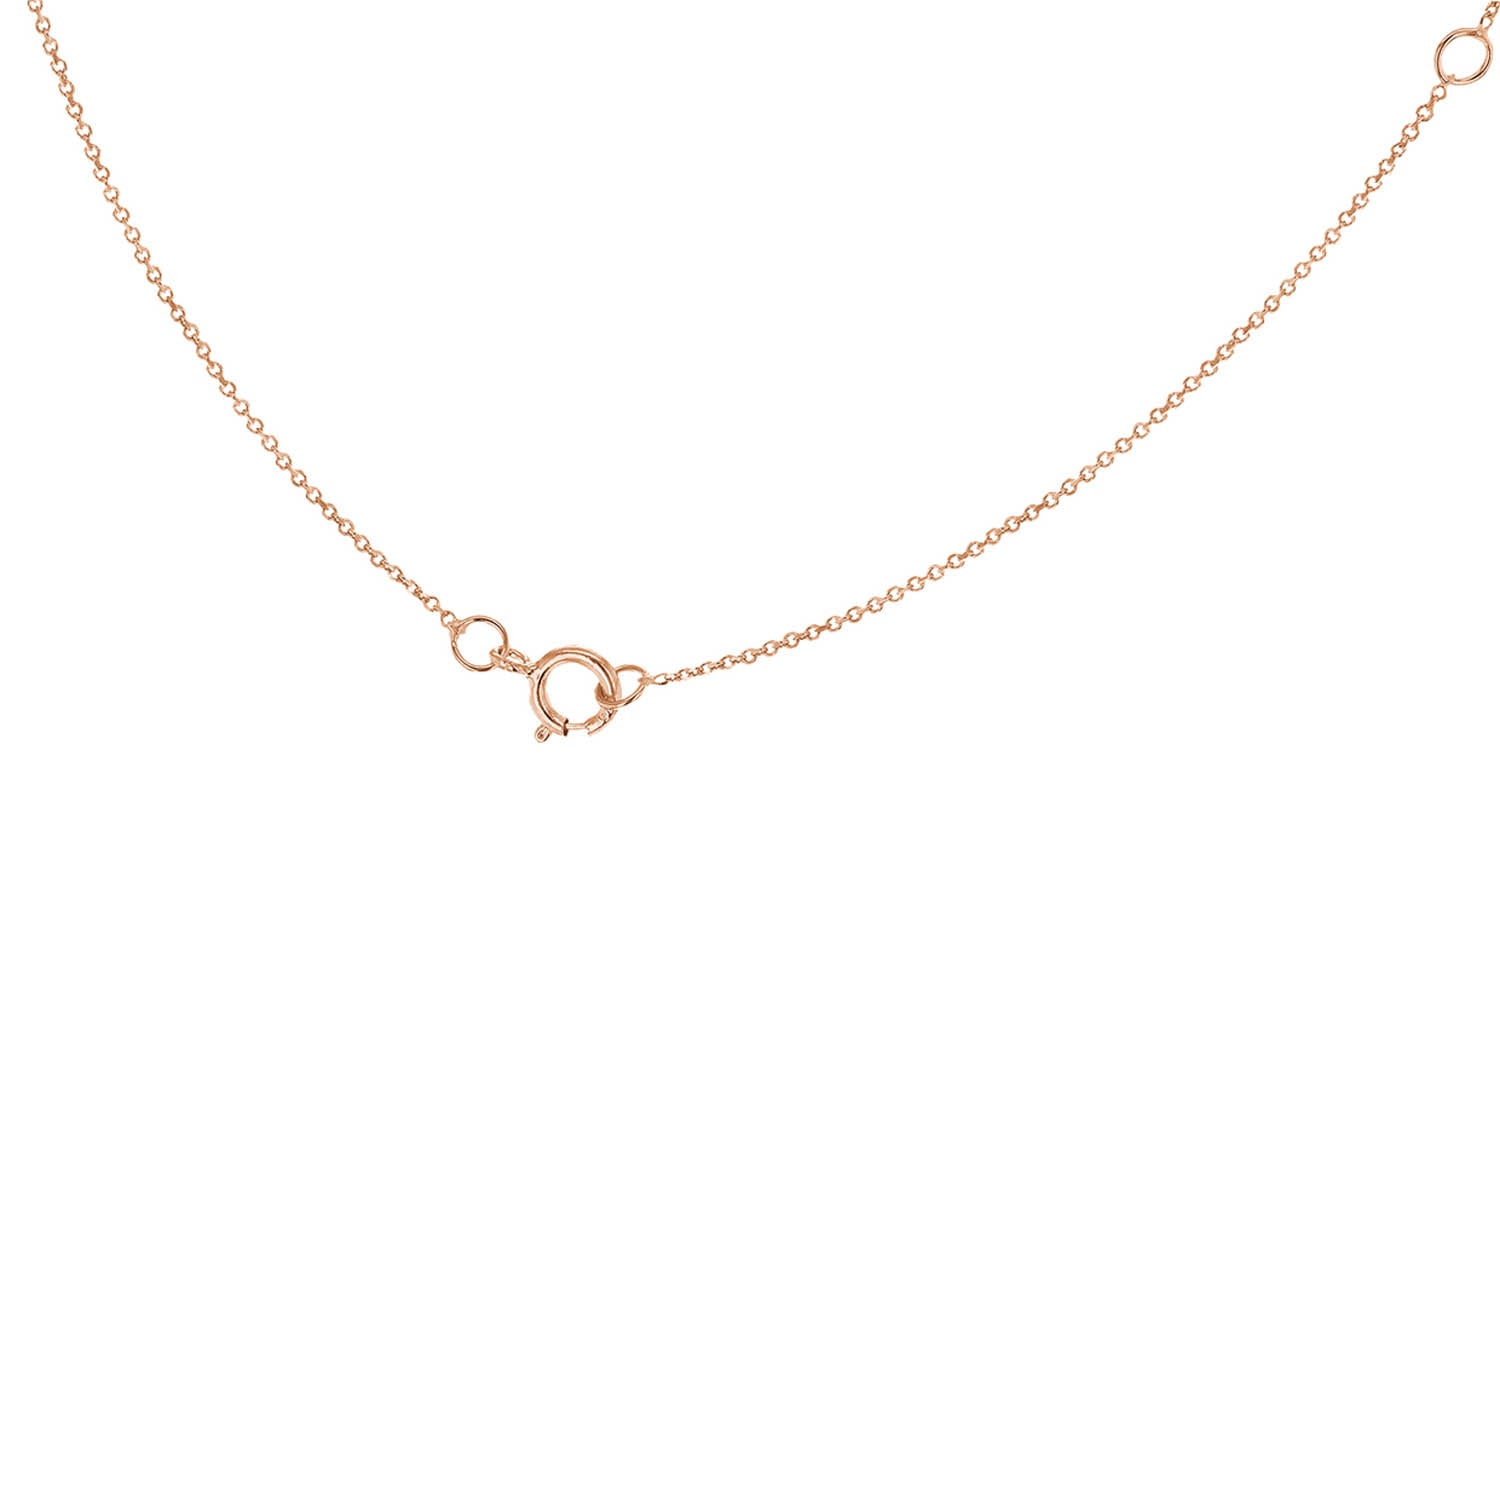 9ct Rose Gold 'I' Initial Adjustable Letter Necklace 38/43cm